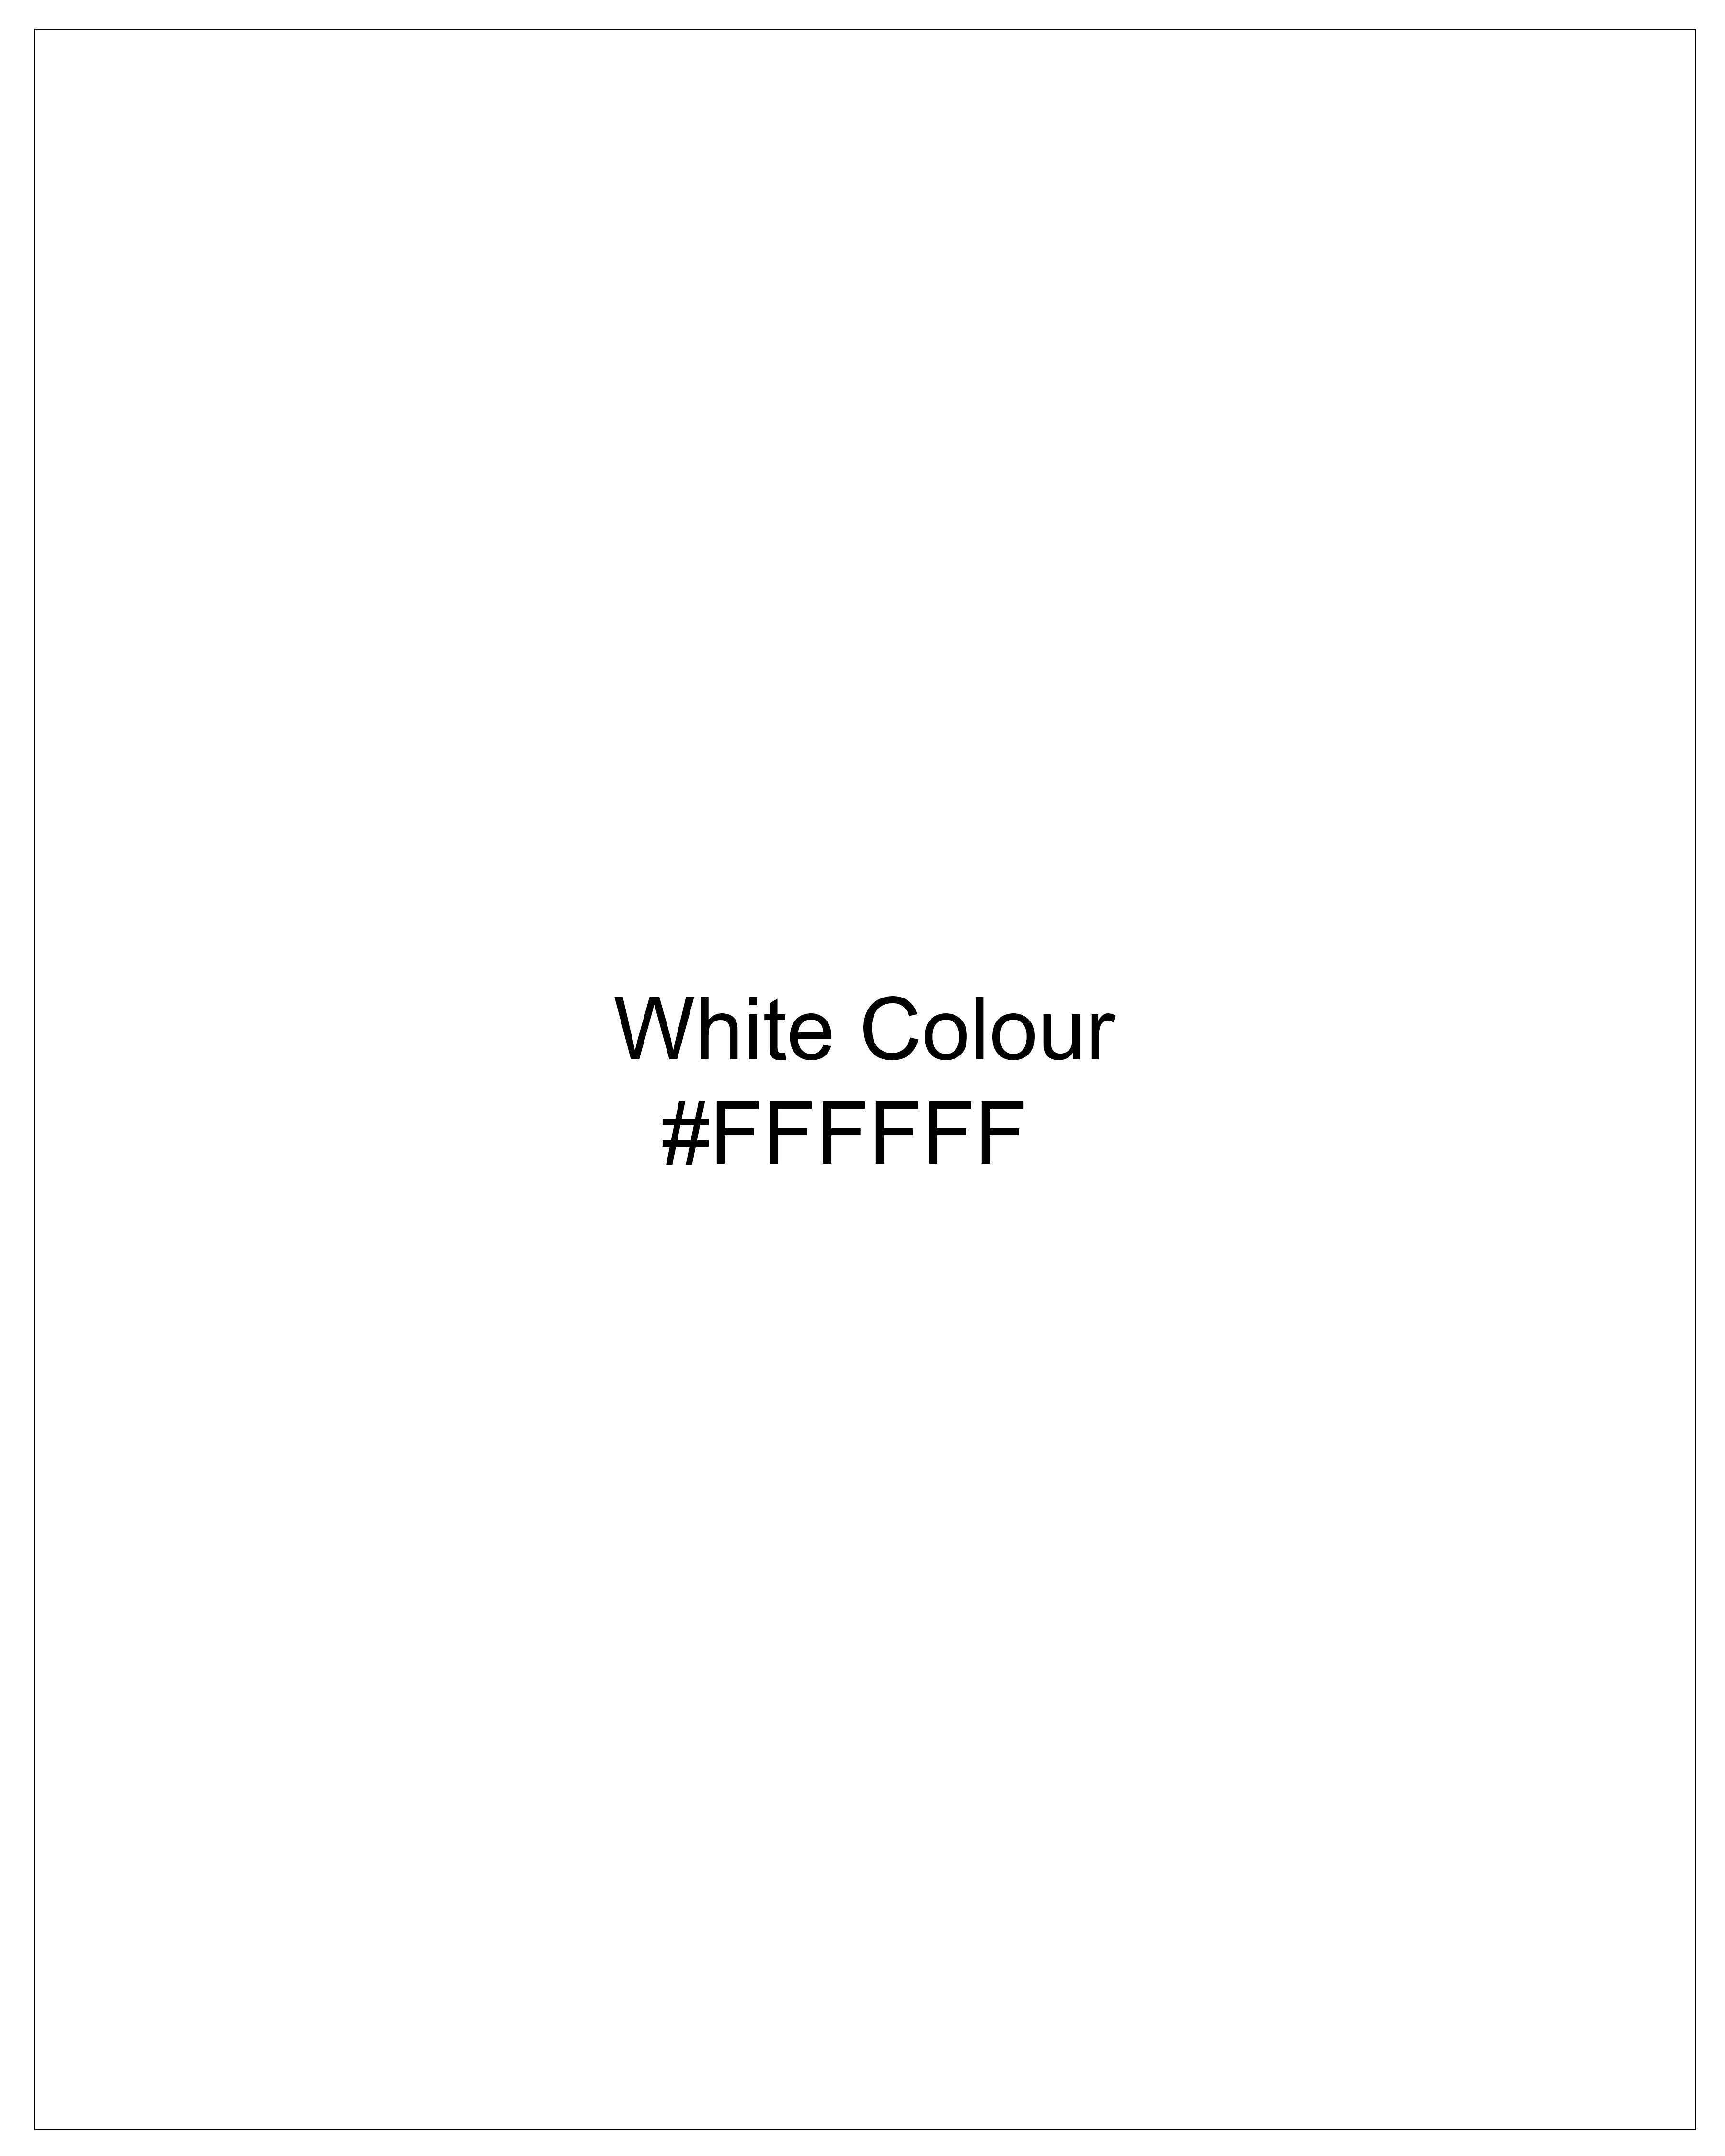 Bright White Dobby Textured Premium Giza Cotton Shirt 8990-CA-38, 8990-CA-H-38, 8990-CA-39, 8990-CA-H-39, 8990-CA-40, 8990-CA-H-40, 8990-CA-42, 8990-CA-H-42, 8990-CA-44, 8990-CA-H-44, 8990-CA-46, 8990-CA-H-46, 8990-CA-48, 8990-CA-H-48, 8990-CA-50, 8990-CA-H-50, 8990-CA-52, 8990-CA-H-52